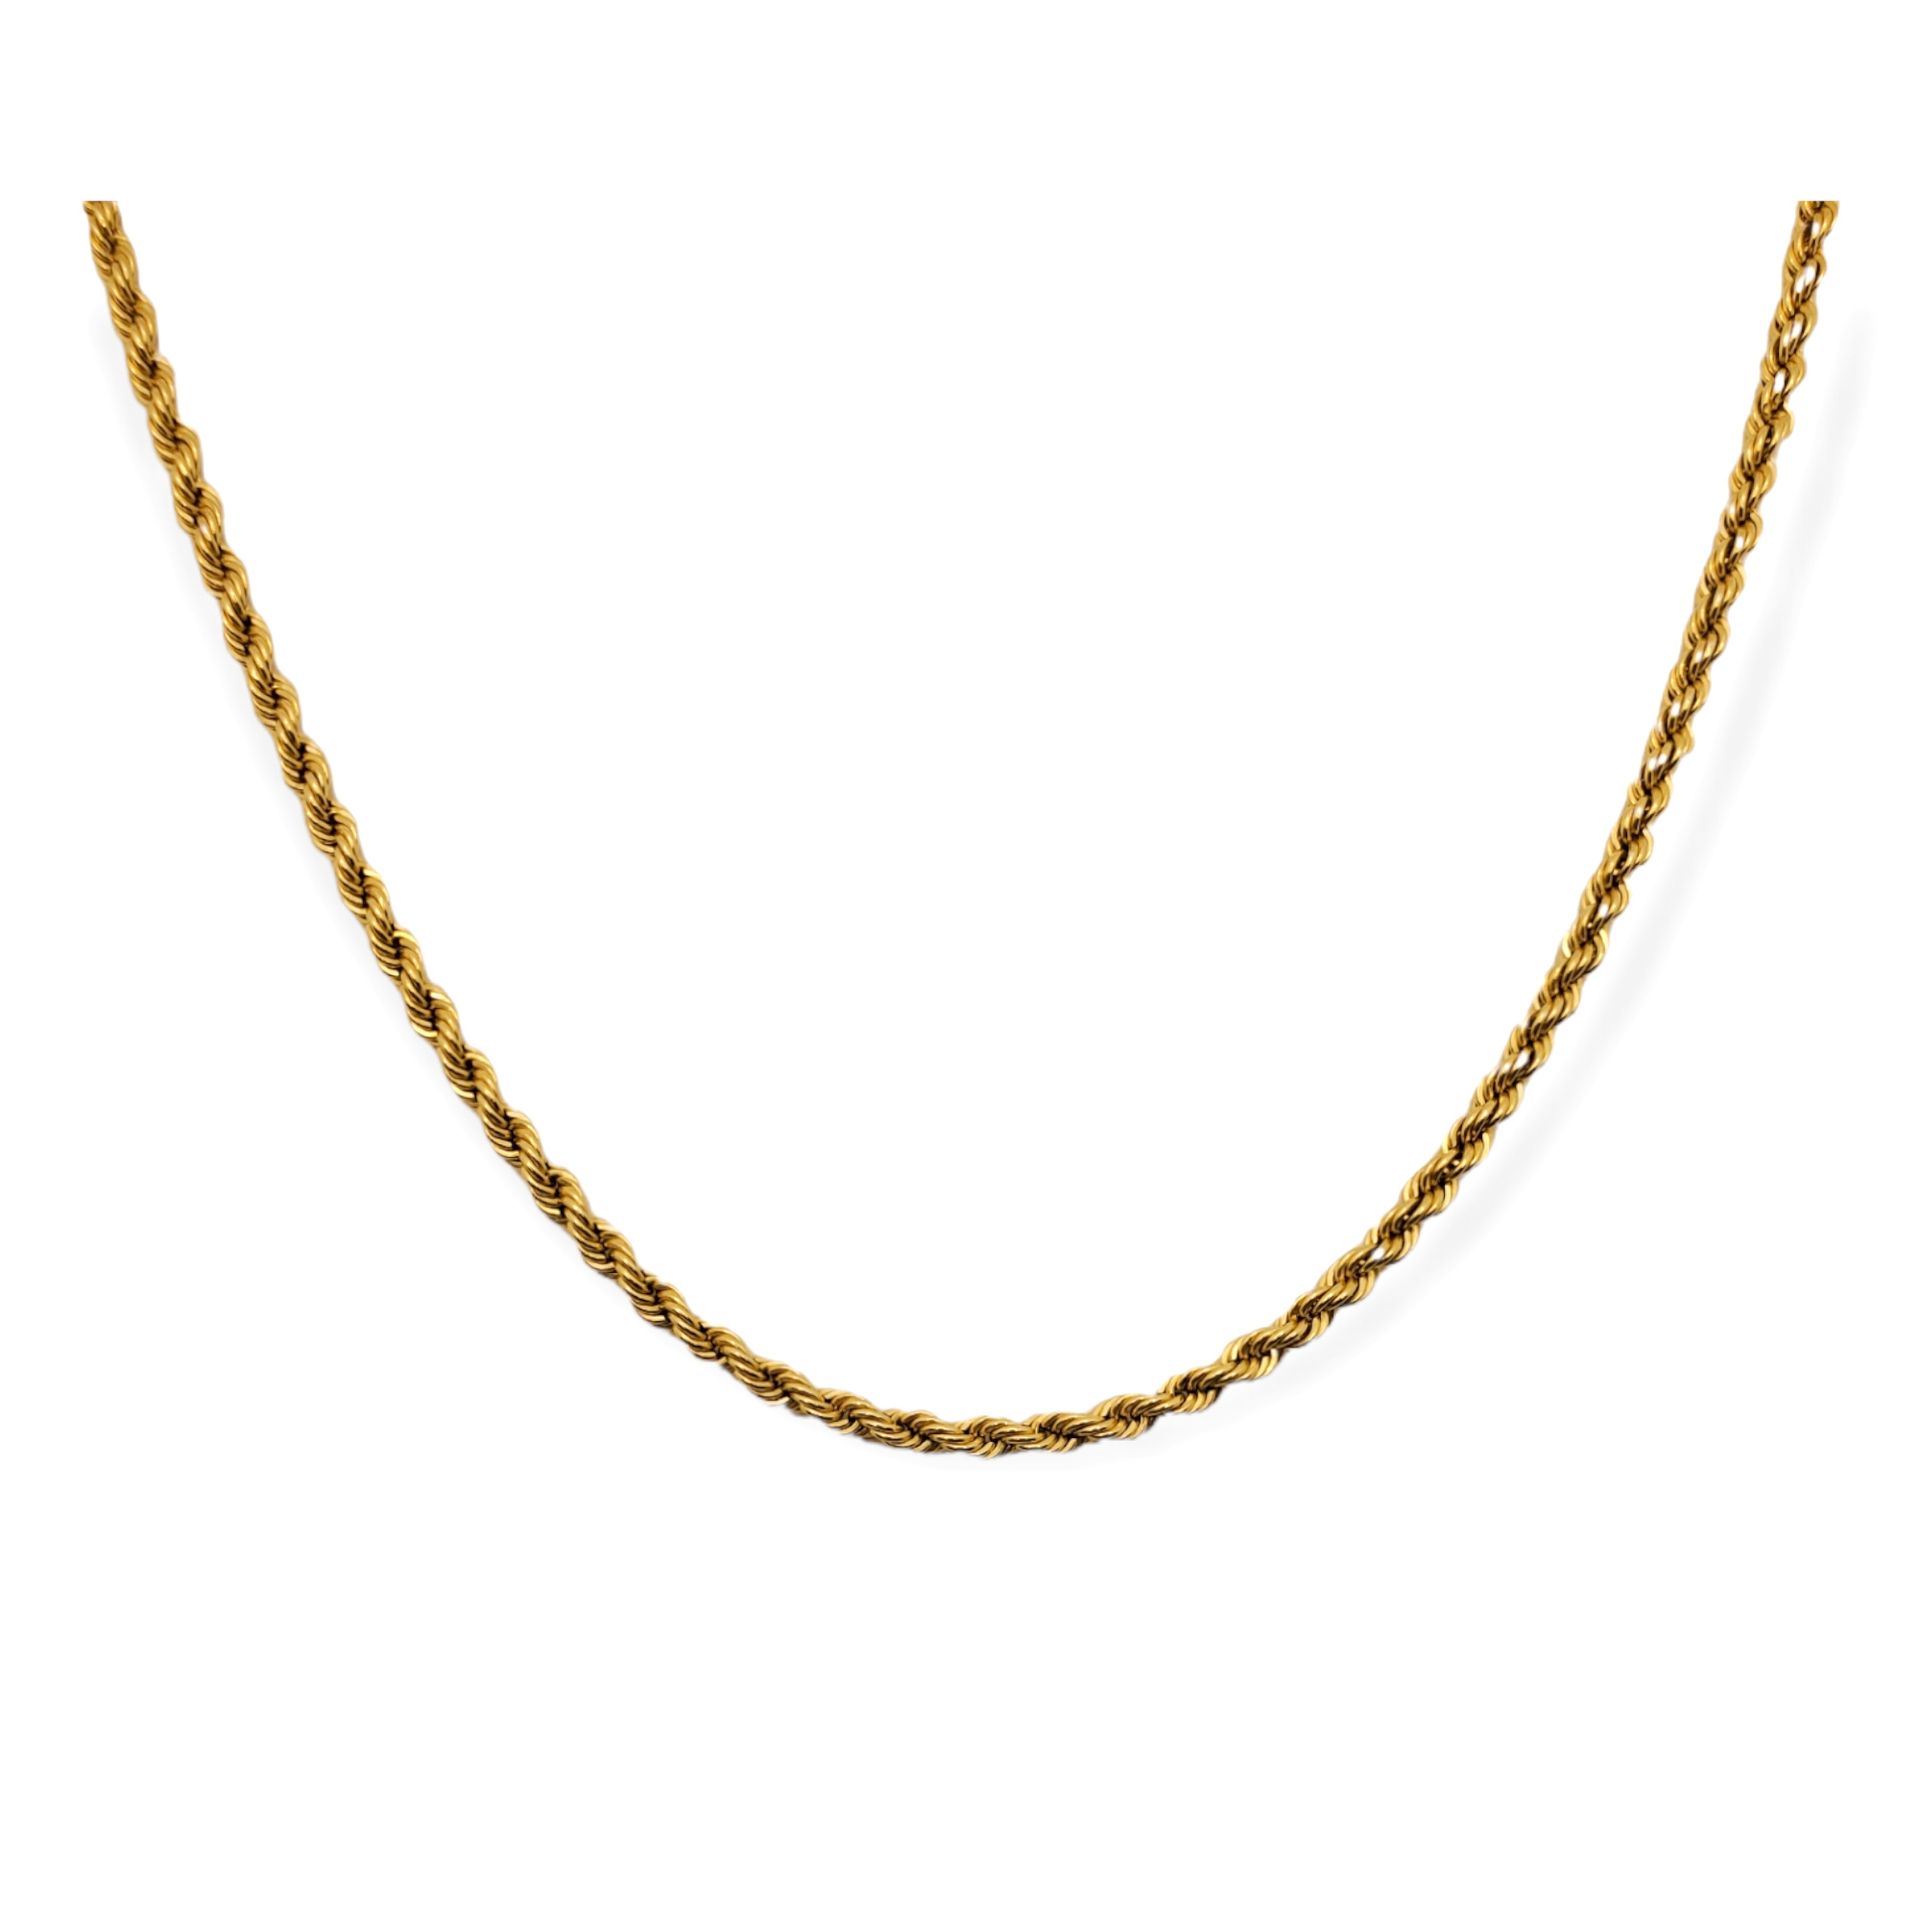 Cadena cordón Cadena de tipo cordón en oro de 18k. 

Medida 50cm. Peso 9,28g